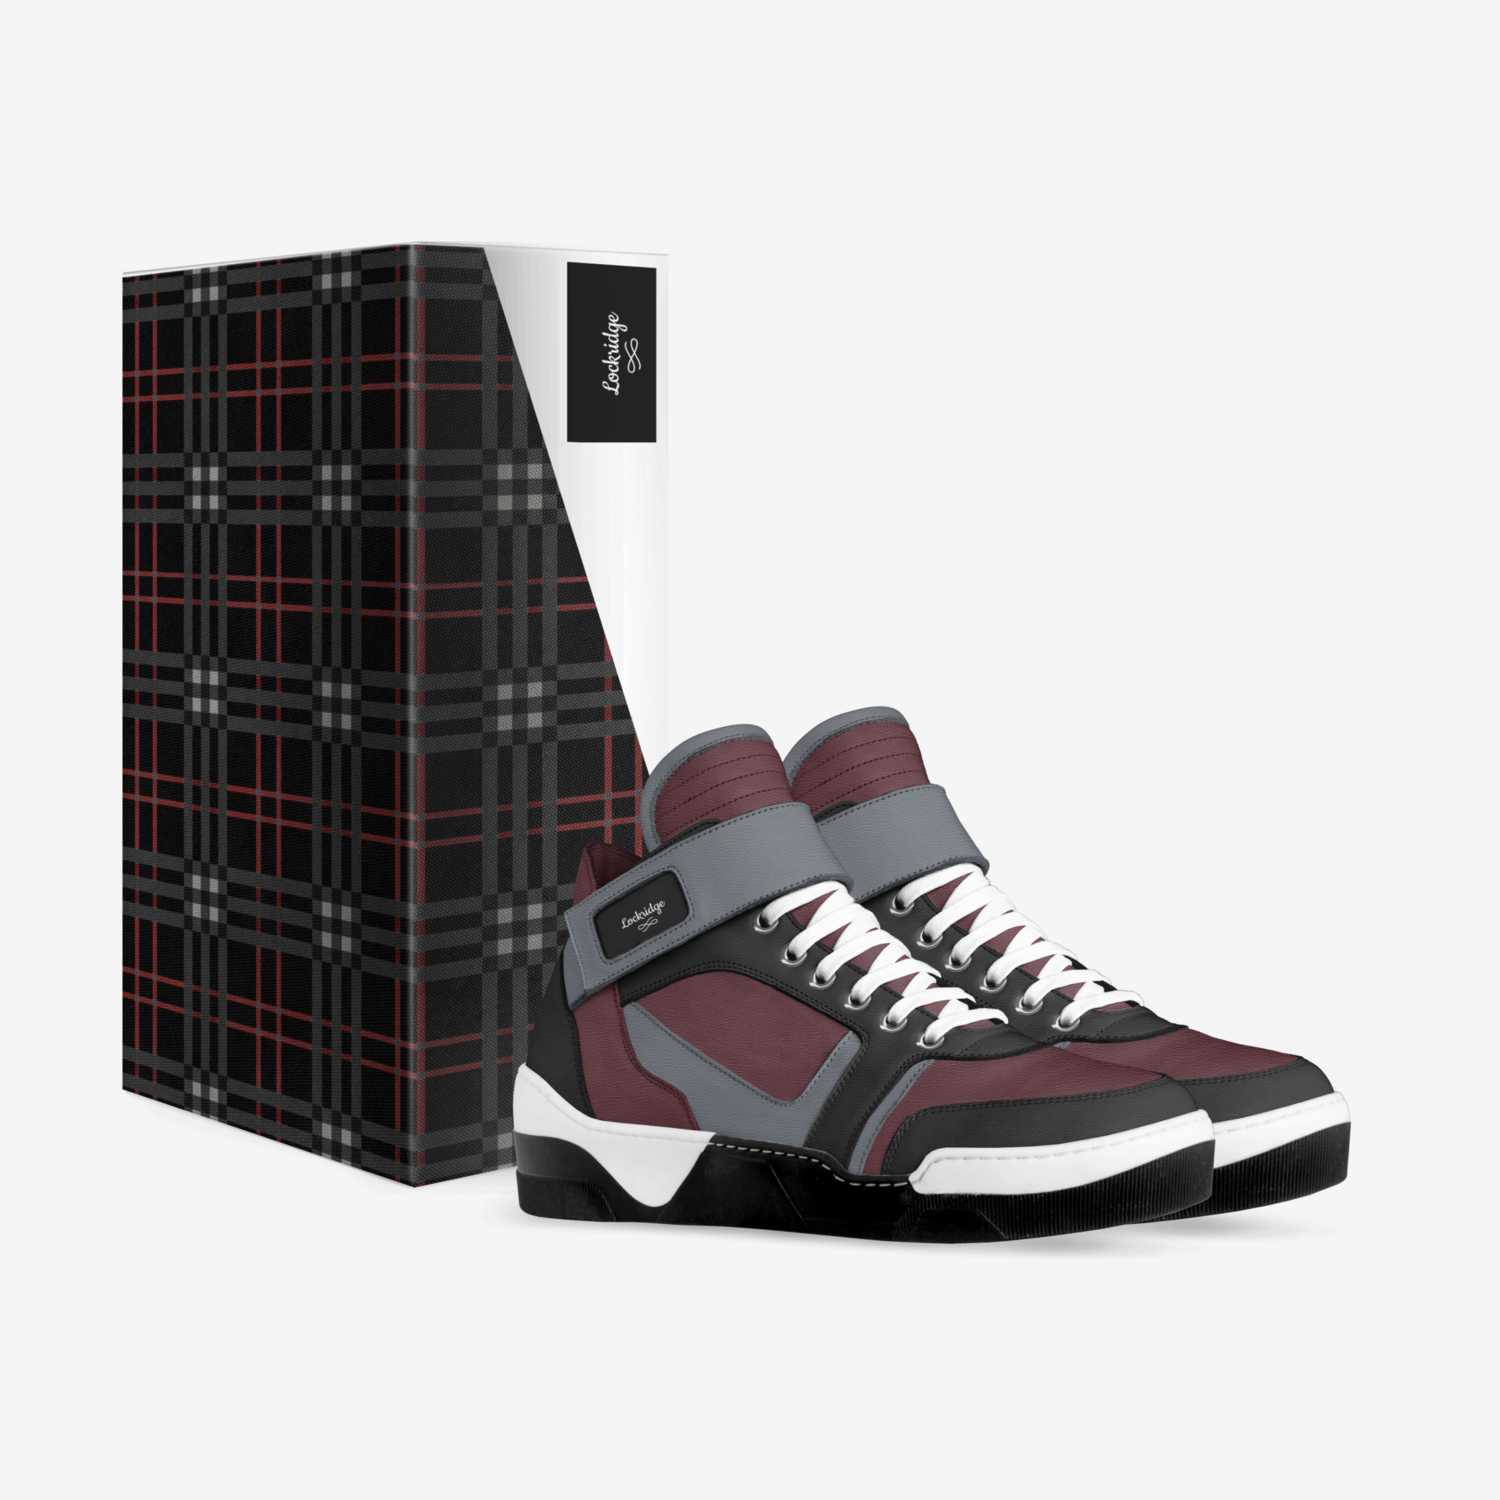 Lockridge custom made in Italy shoes by Tramia Lockridge | Box view